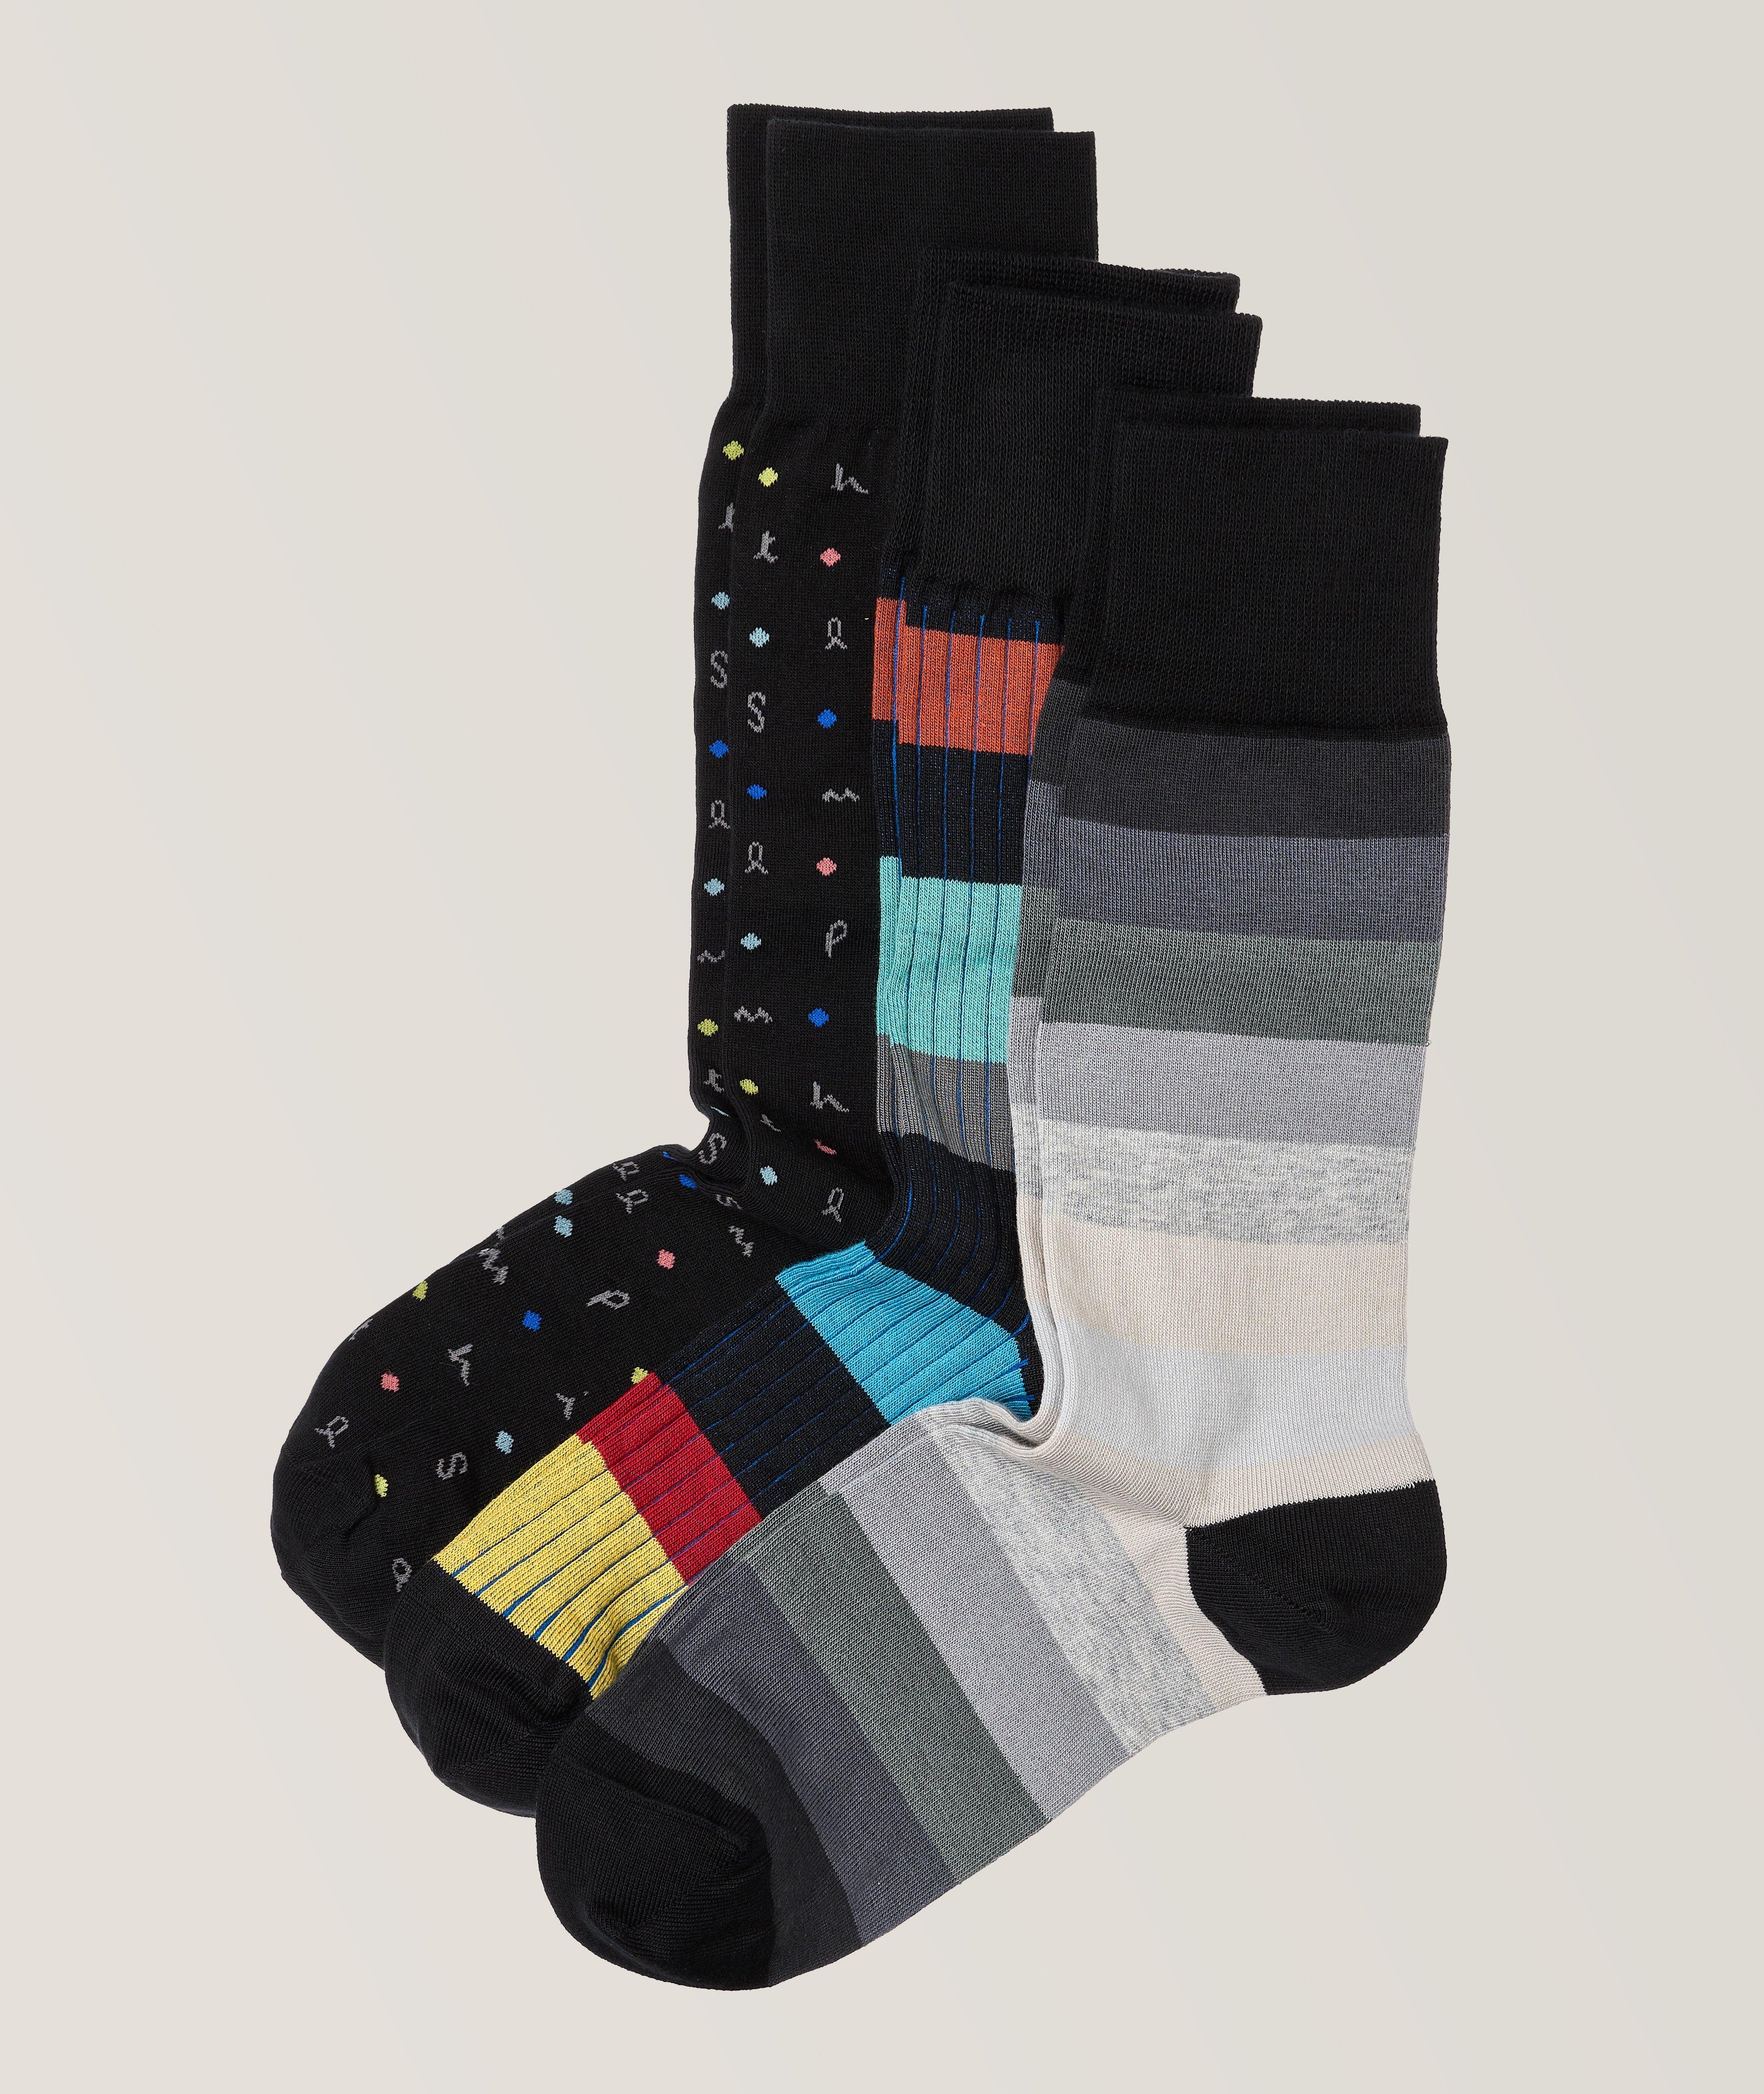 Ensemble de trois paires de chaussettes en coton extensible image 0